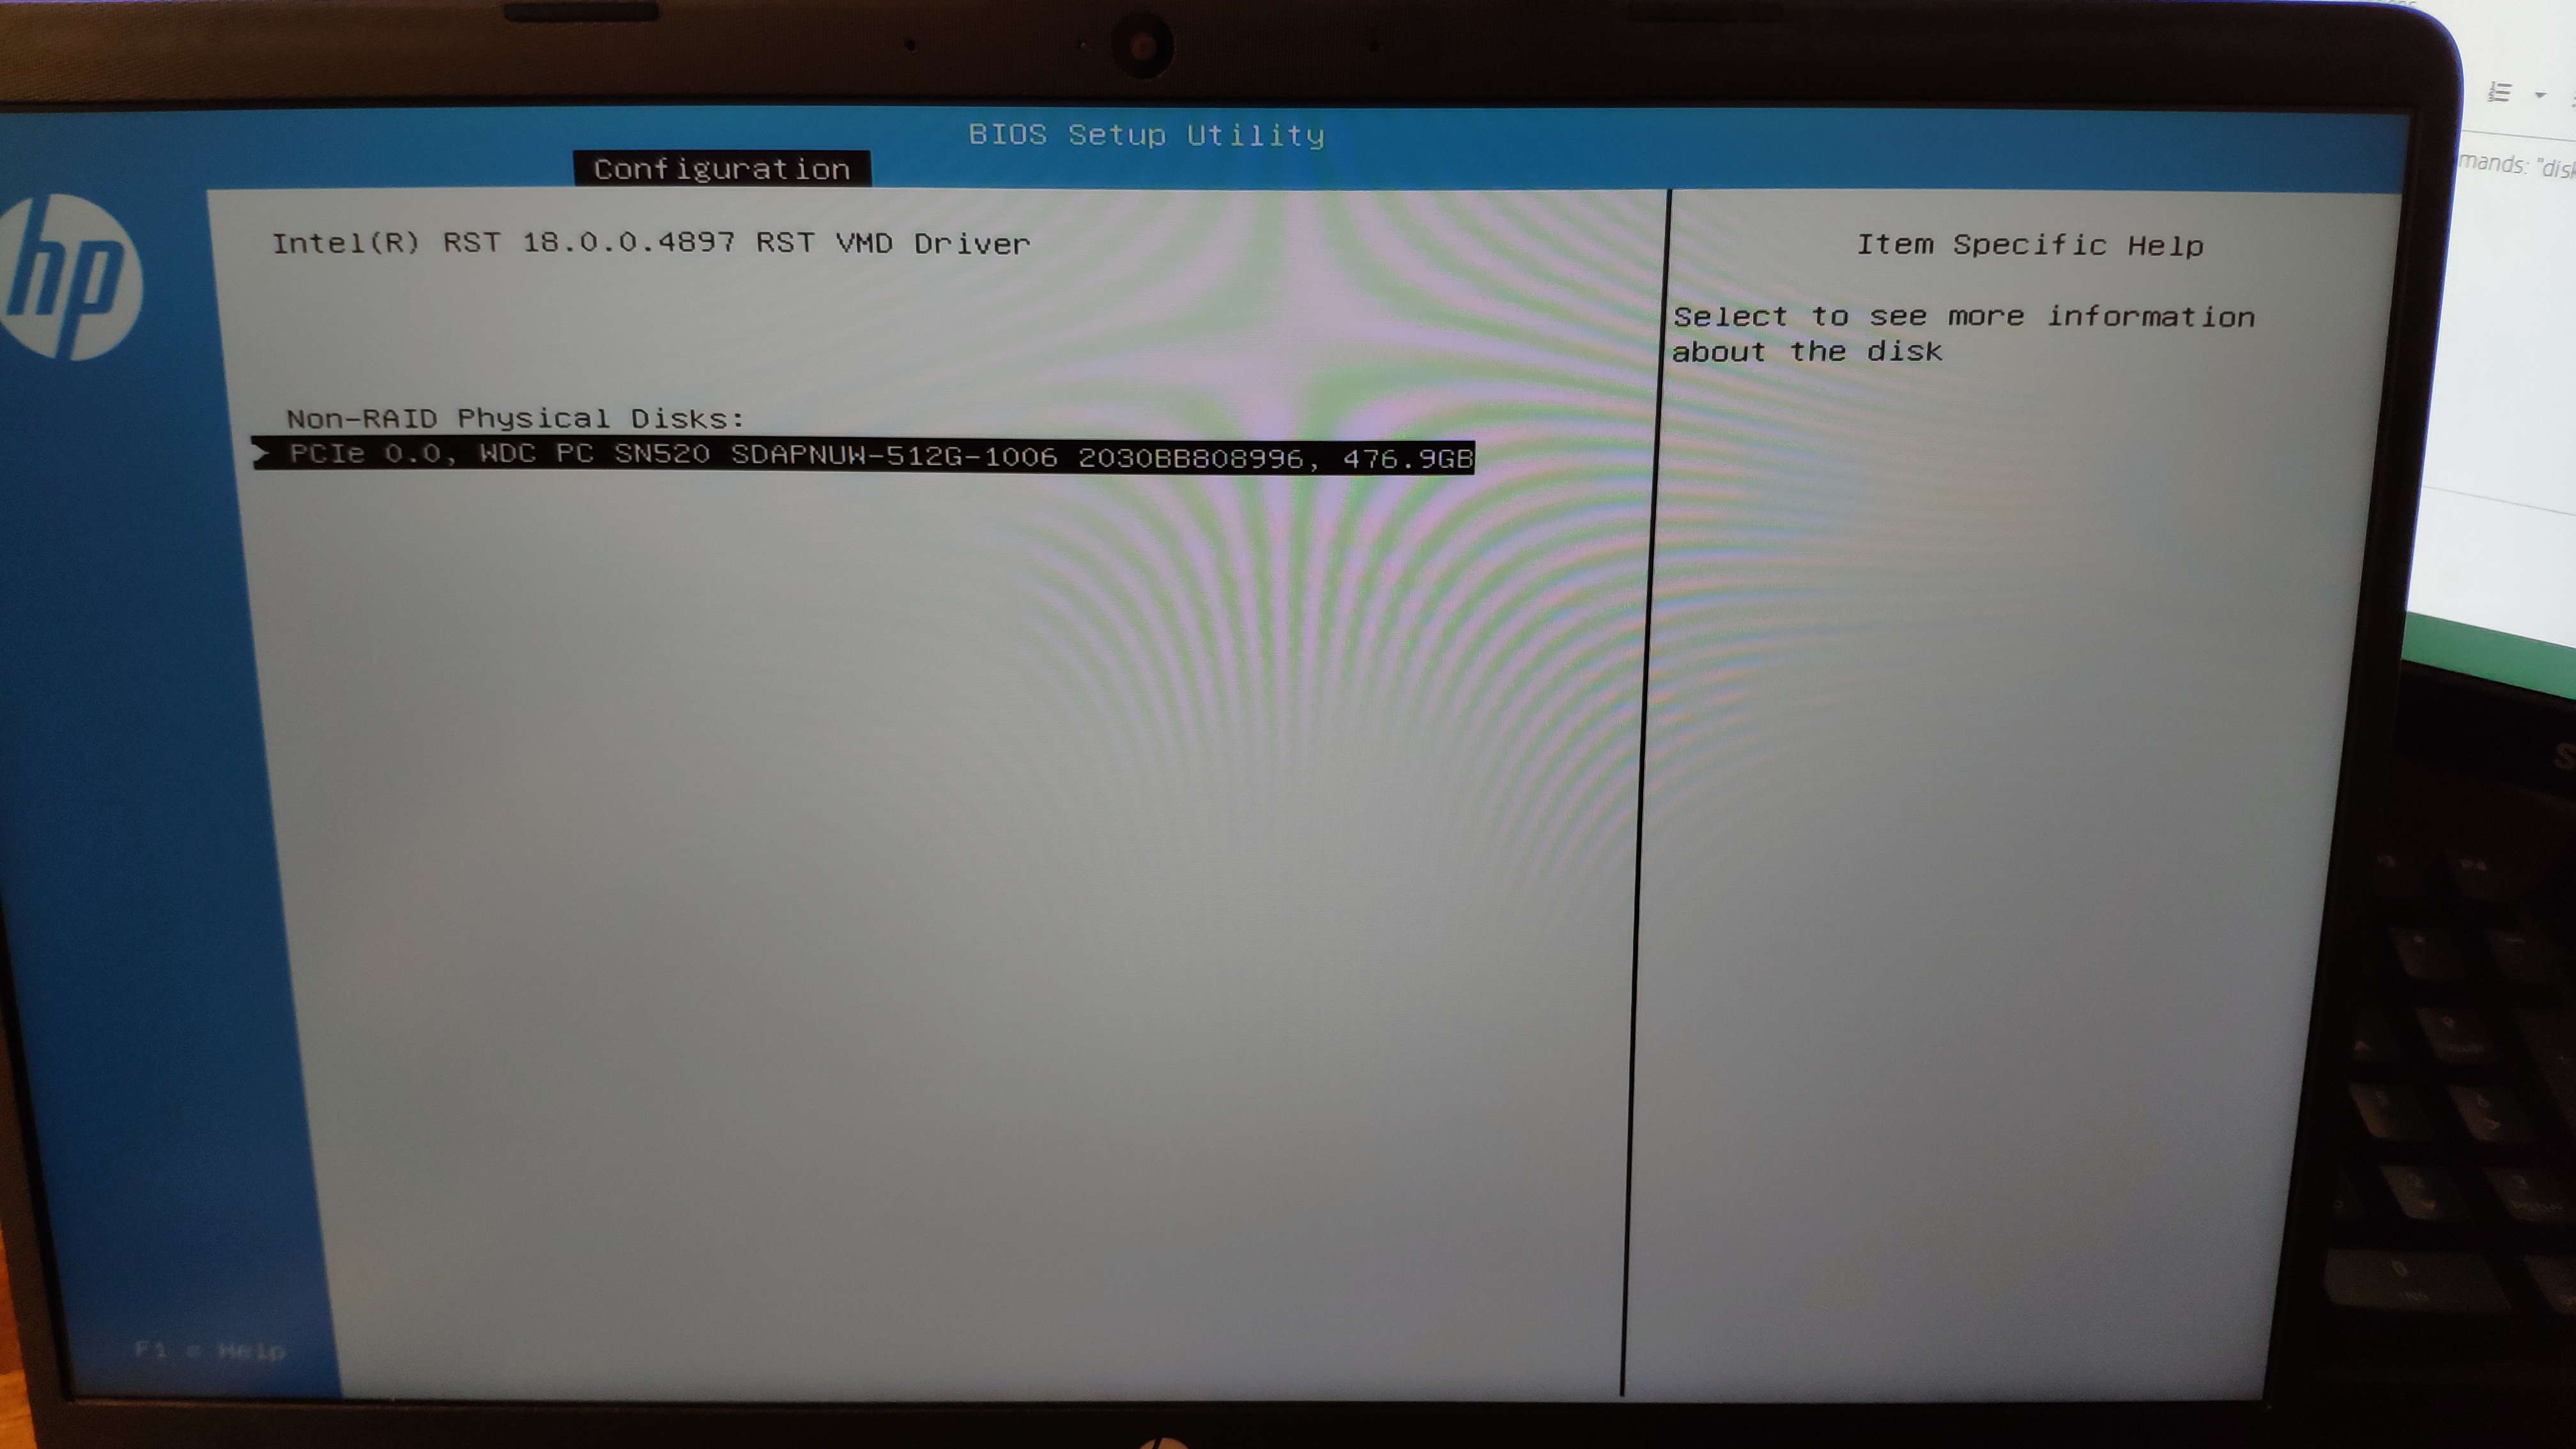 New WD SATA drive displayed as IDE in BIOS. Please Help - Desktop